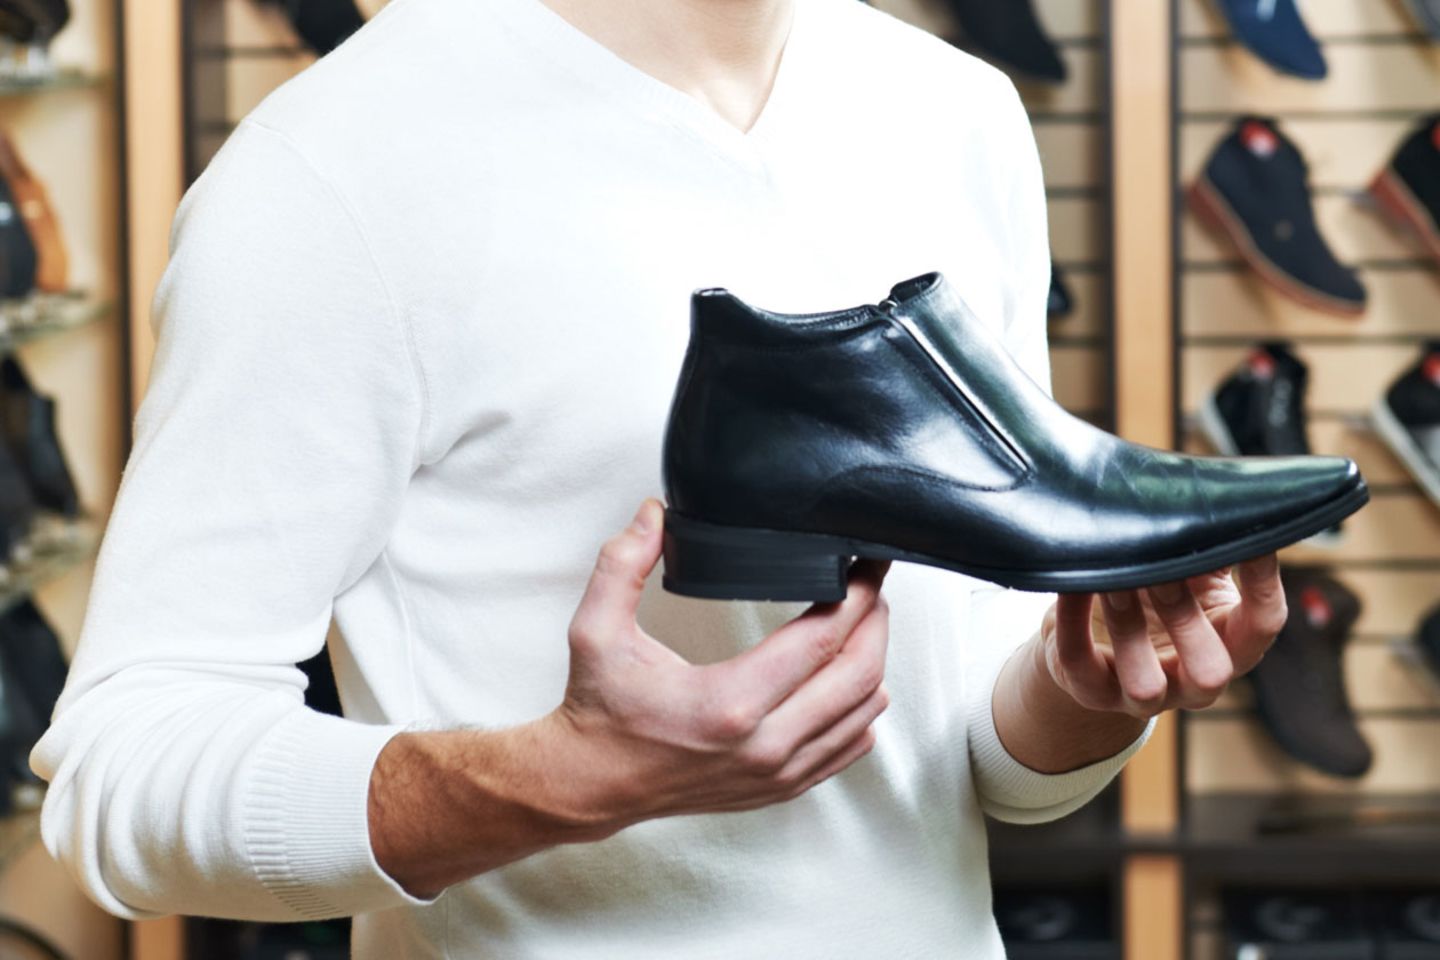 Der größte Teil des Schuhleders wird zumeist mit dem Schwermetall Chrom gegerbt. Als Kunde im Schuhgeschäft erfährt man nichts über das Gift in der Ware - bislang gibt es keine Kennzeichnungspflicht für Schuhe.